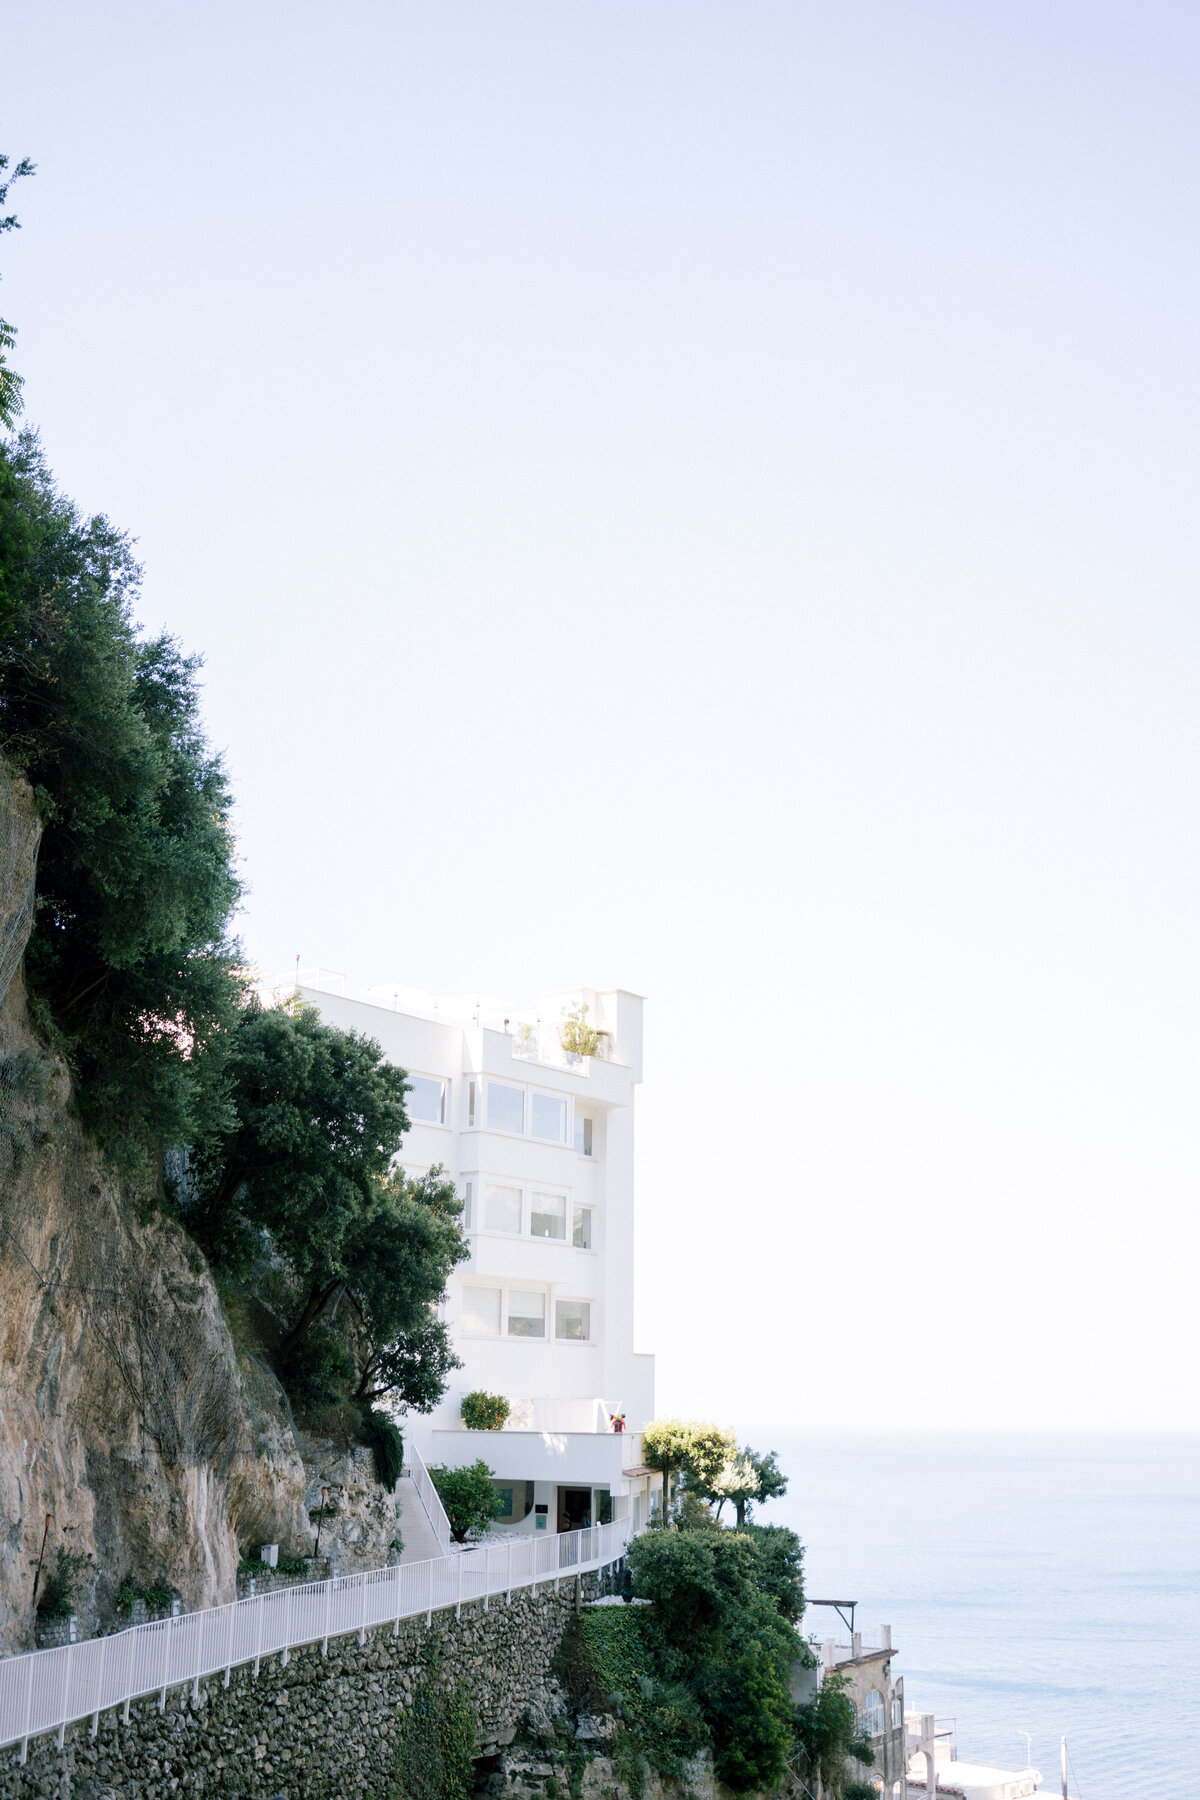 Entrance to Casa Angelina Praiano Amalfi Coast Italy